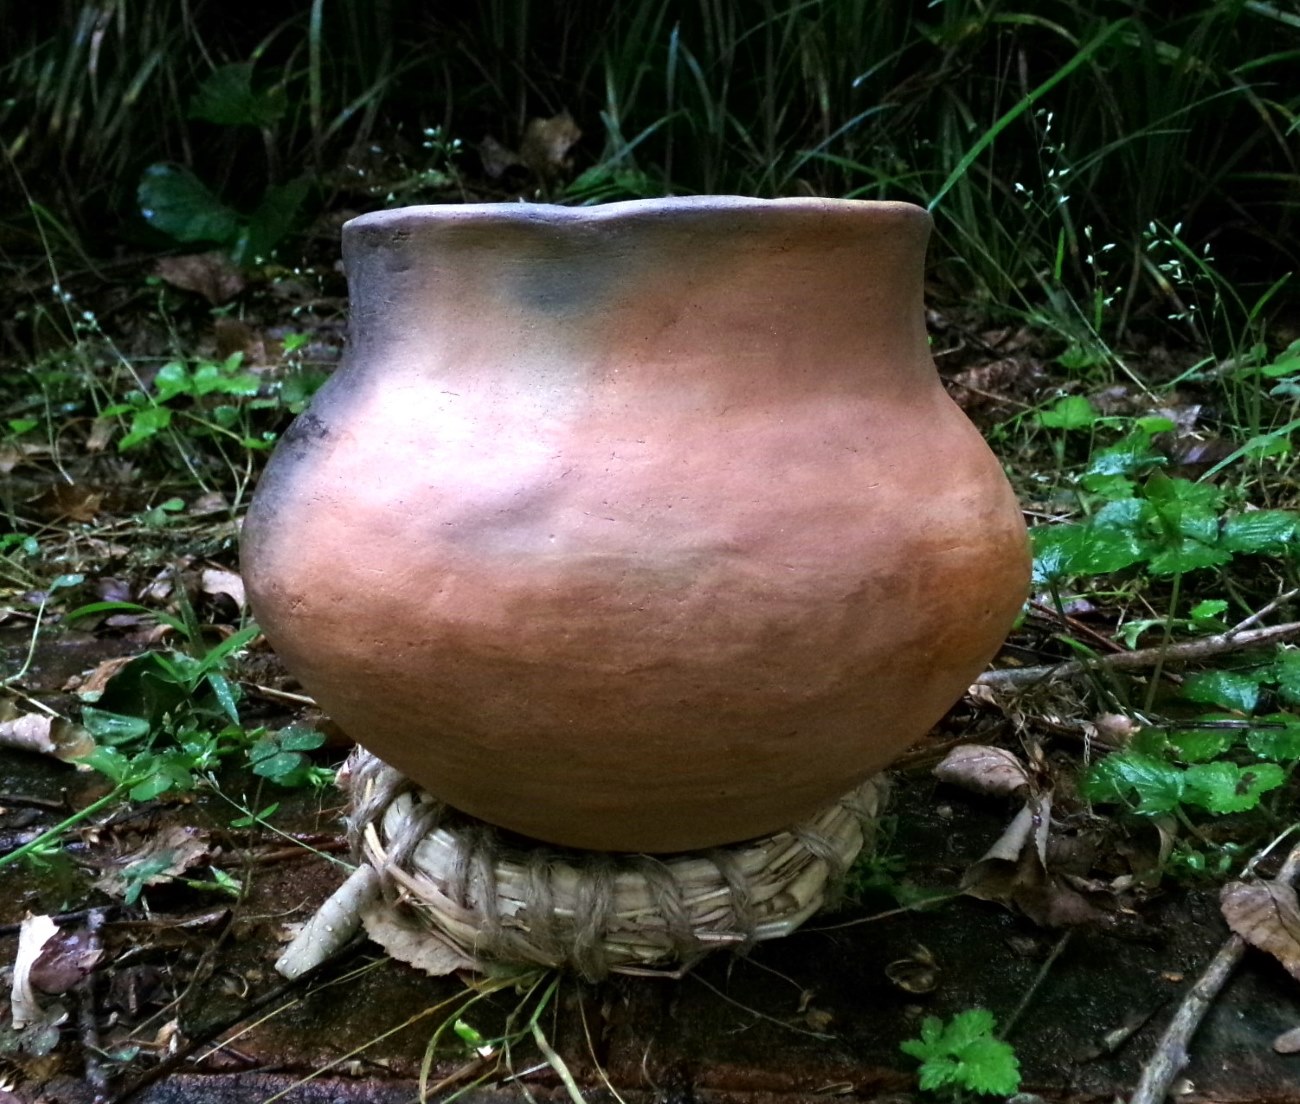 Primitive pottery